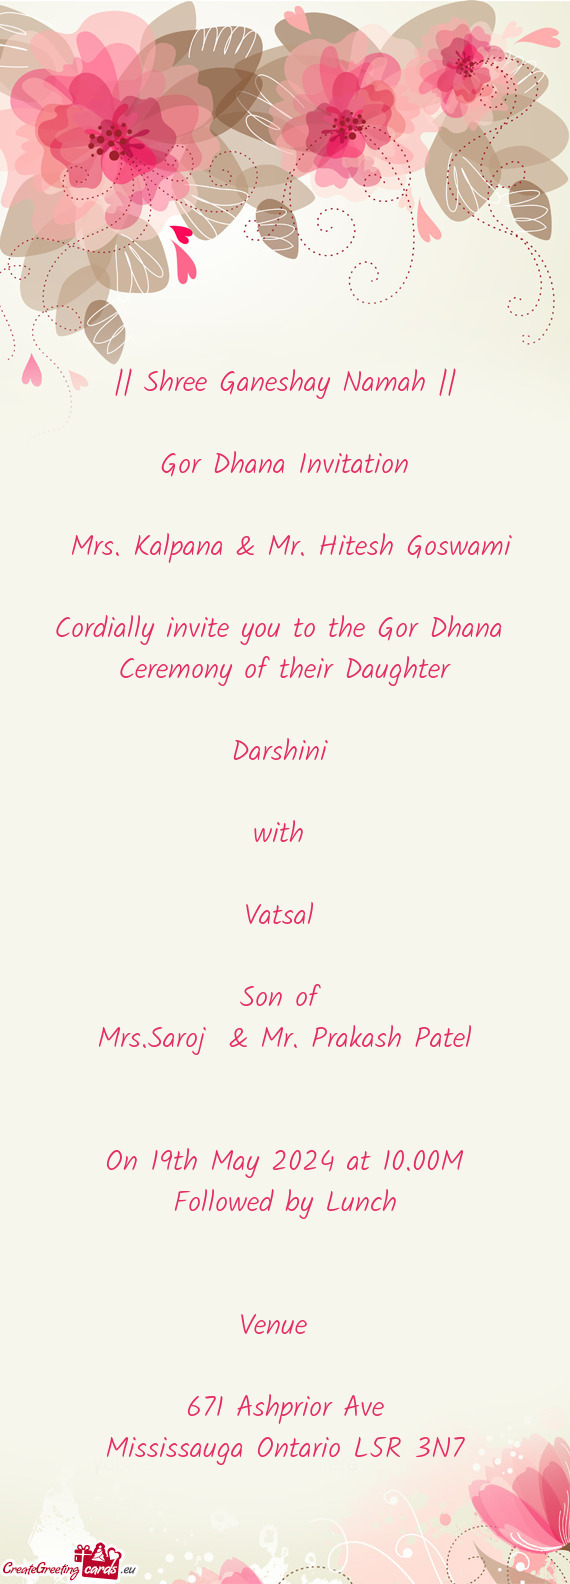 Mrs. Kalpana & Mr. Hitesh Goswami